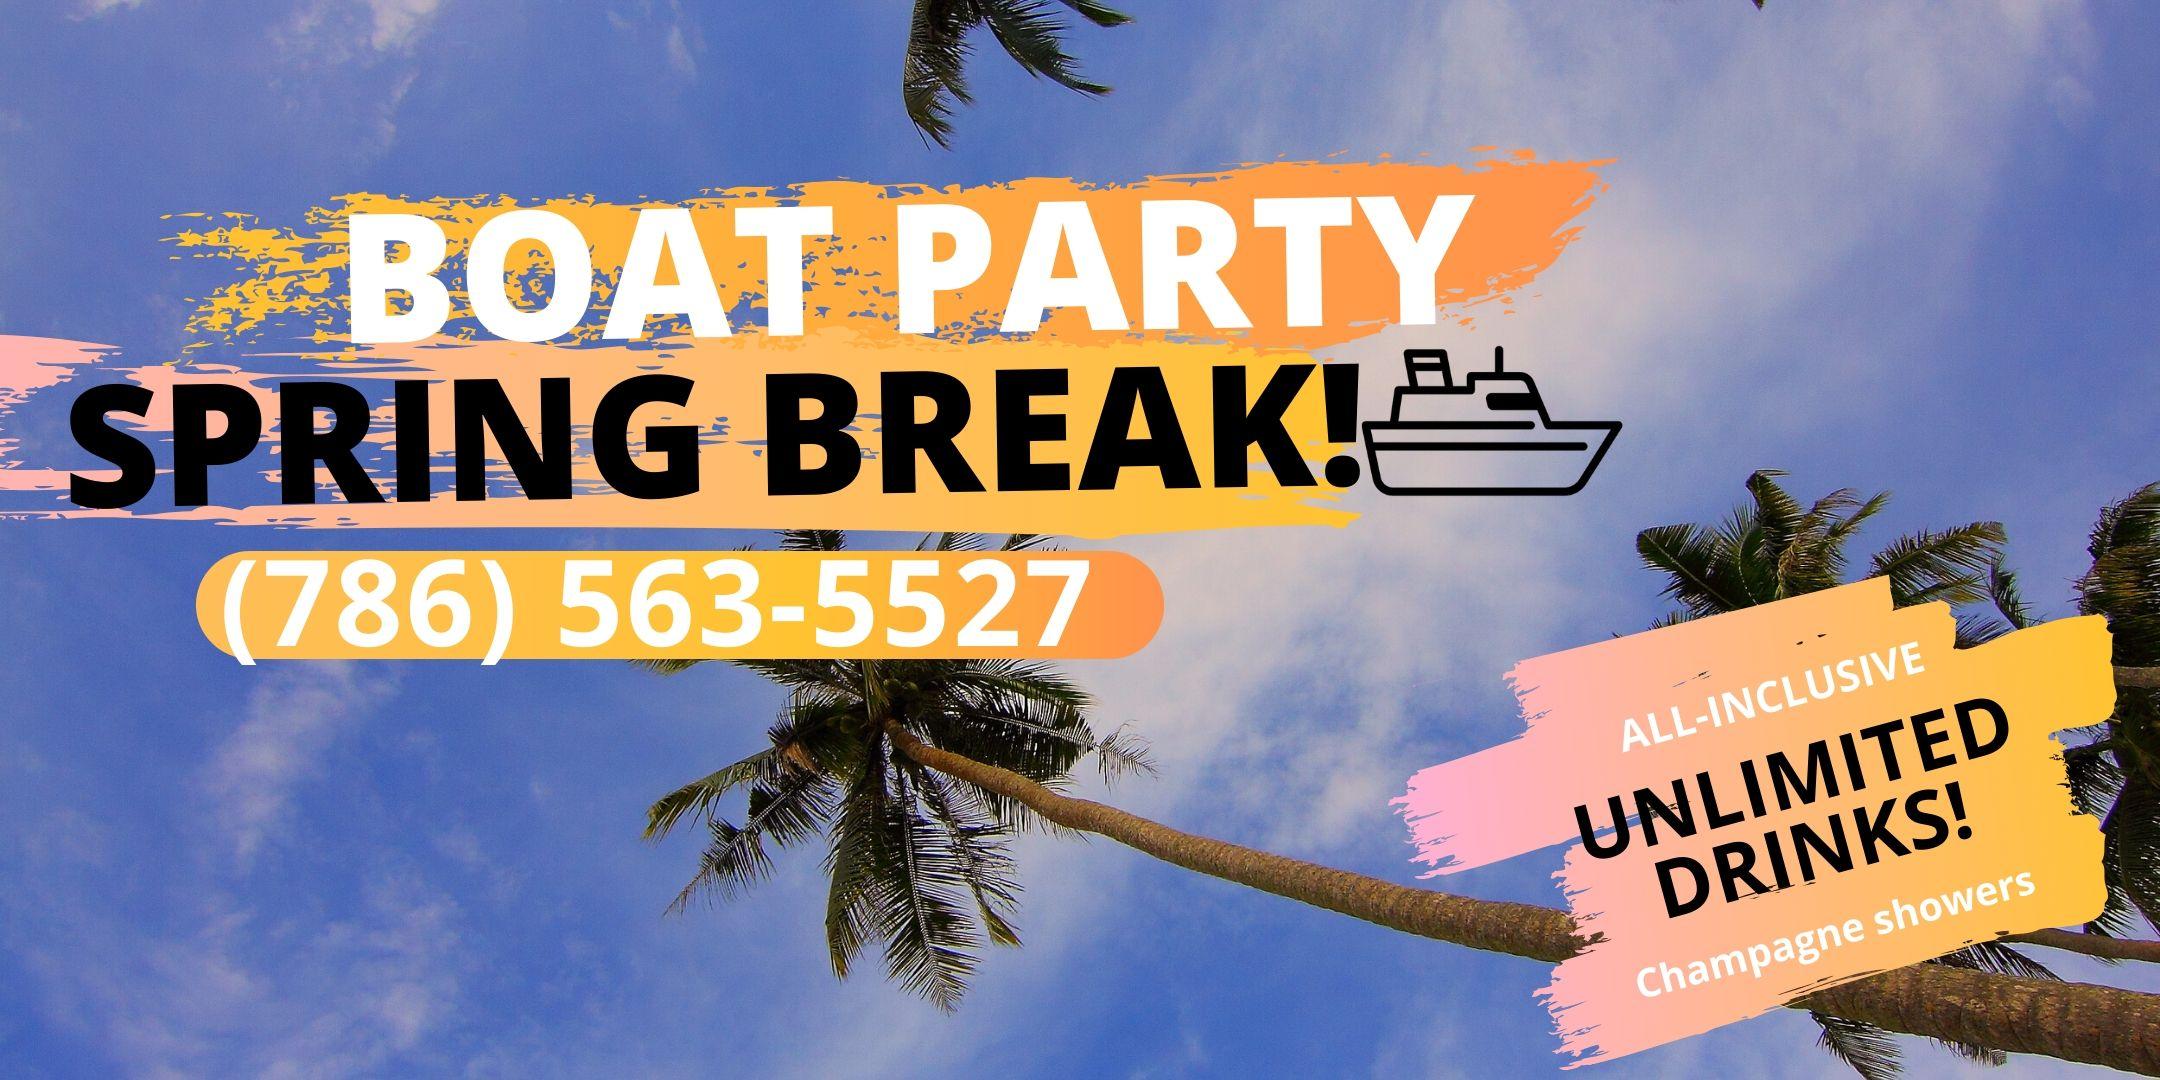 #HOT Spring BREAK BOAT PARTY! #Miami